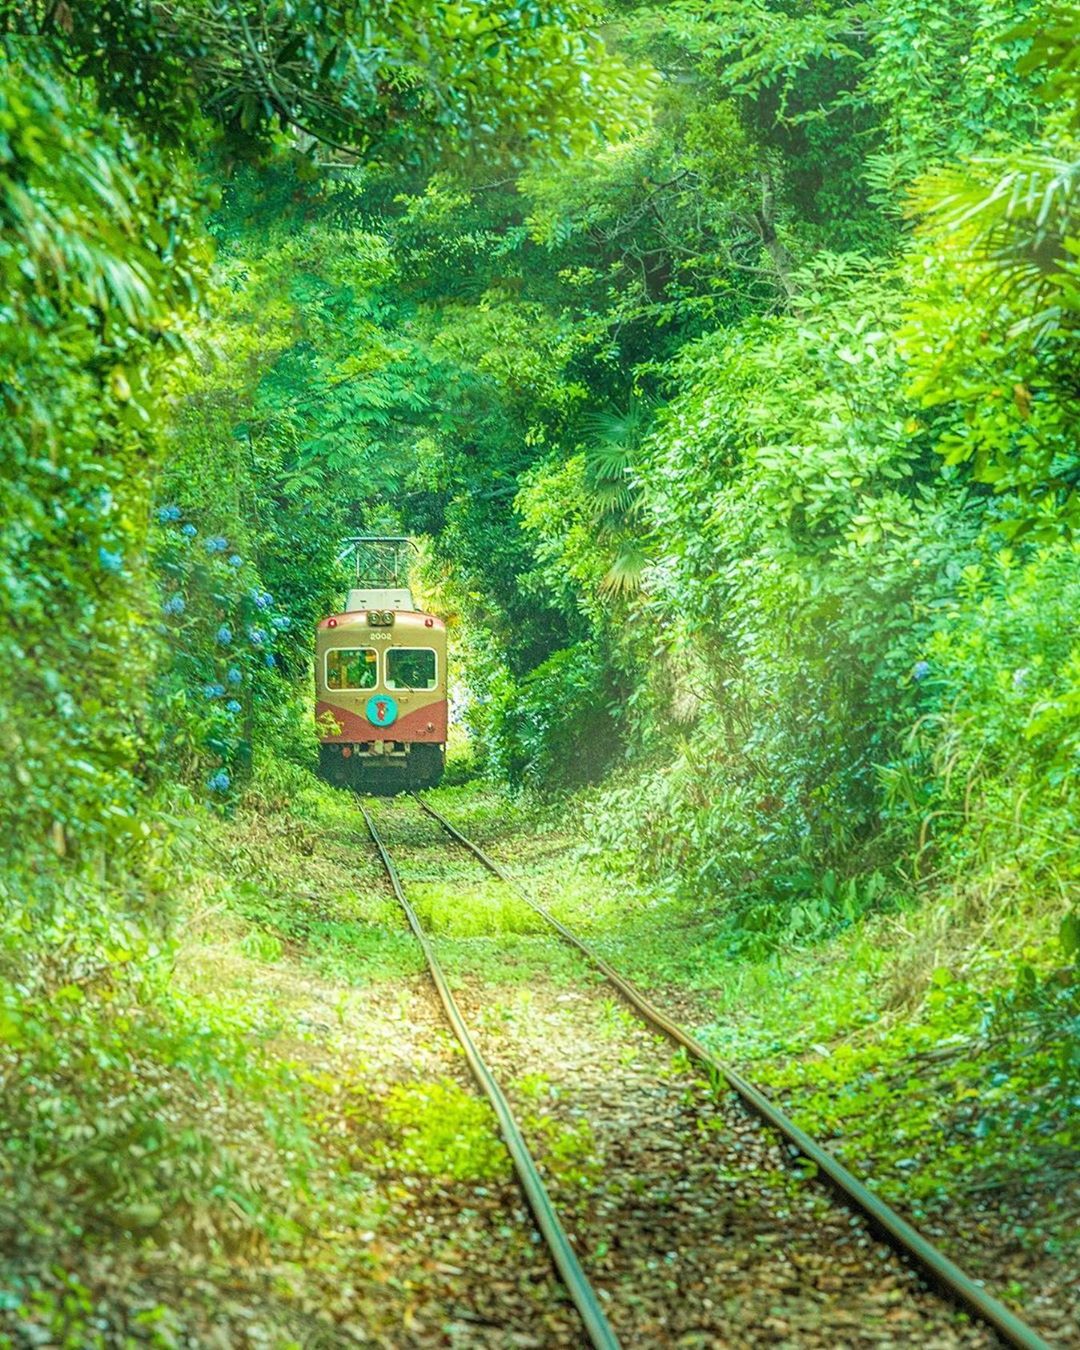 Retrip Nippon Retrip 千葉 千葉県の銚子電鉄では 緑の中を電車が走る幻想的な光景を見ることができます 緑のトンネルはまるで ウクライナにある 愛のトンネル のよう ウ Wacoca Japan People Life Style